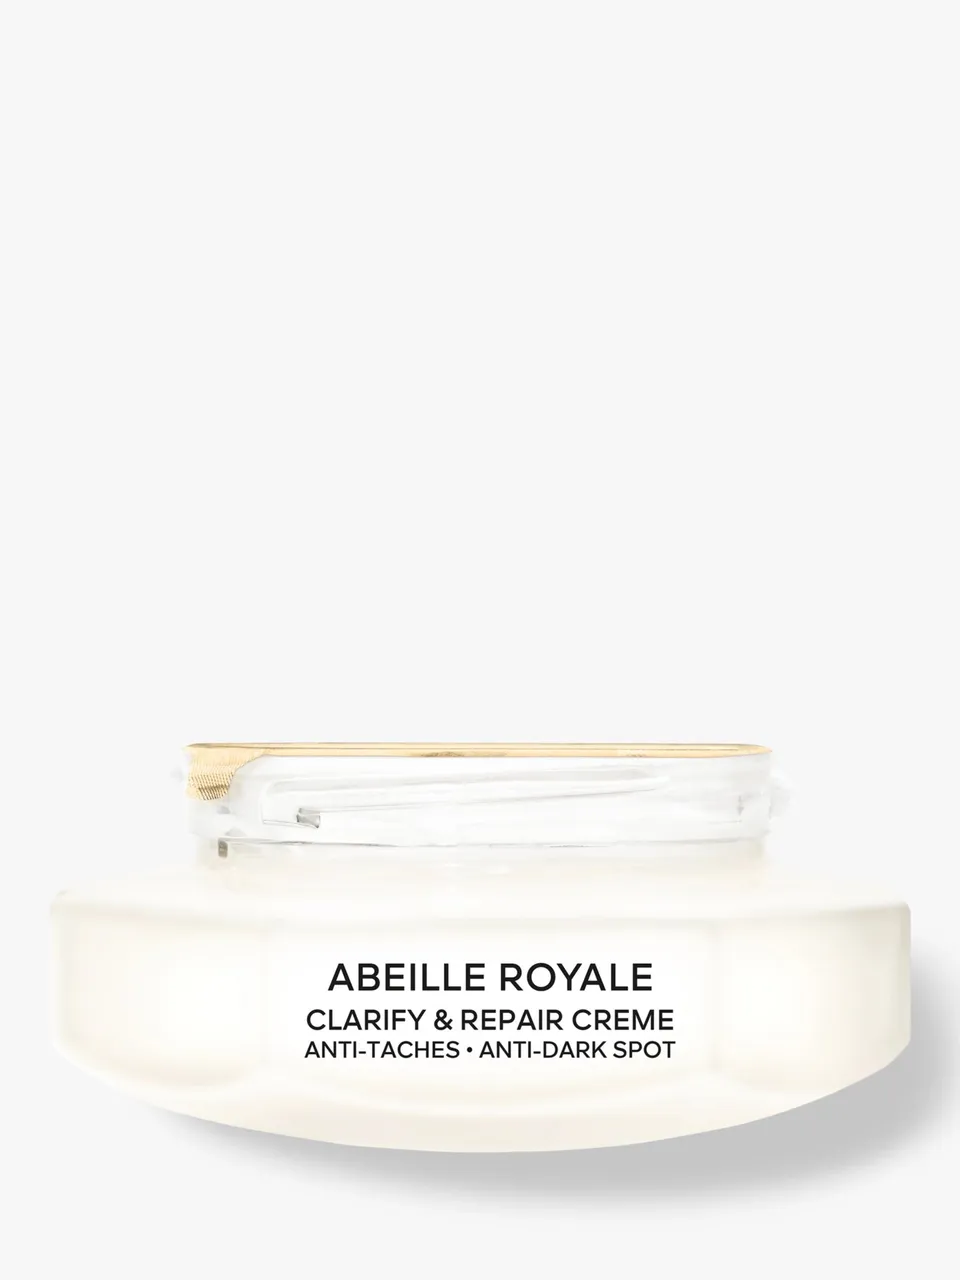 Guerlain Abeille Royale Clarify & Repair Creme Refill, 50ml - Unisex - Size: 50ml